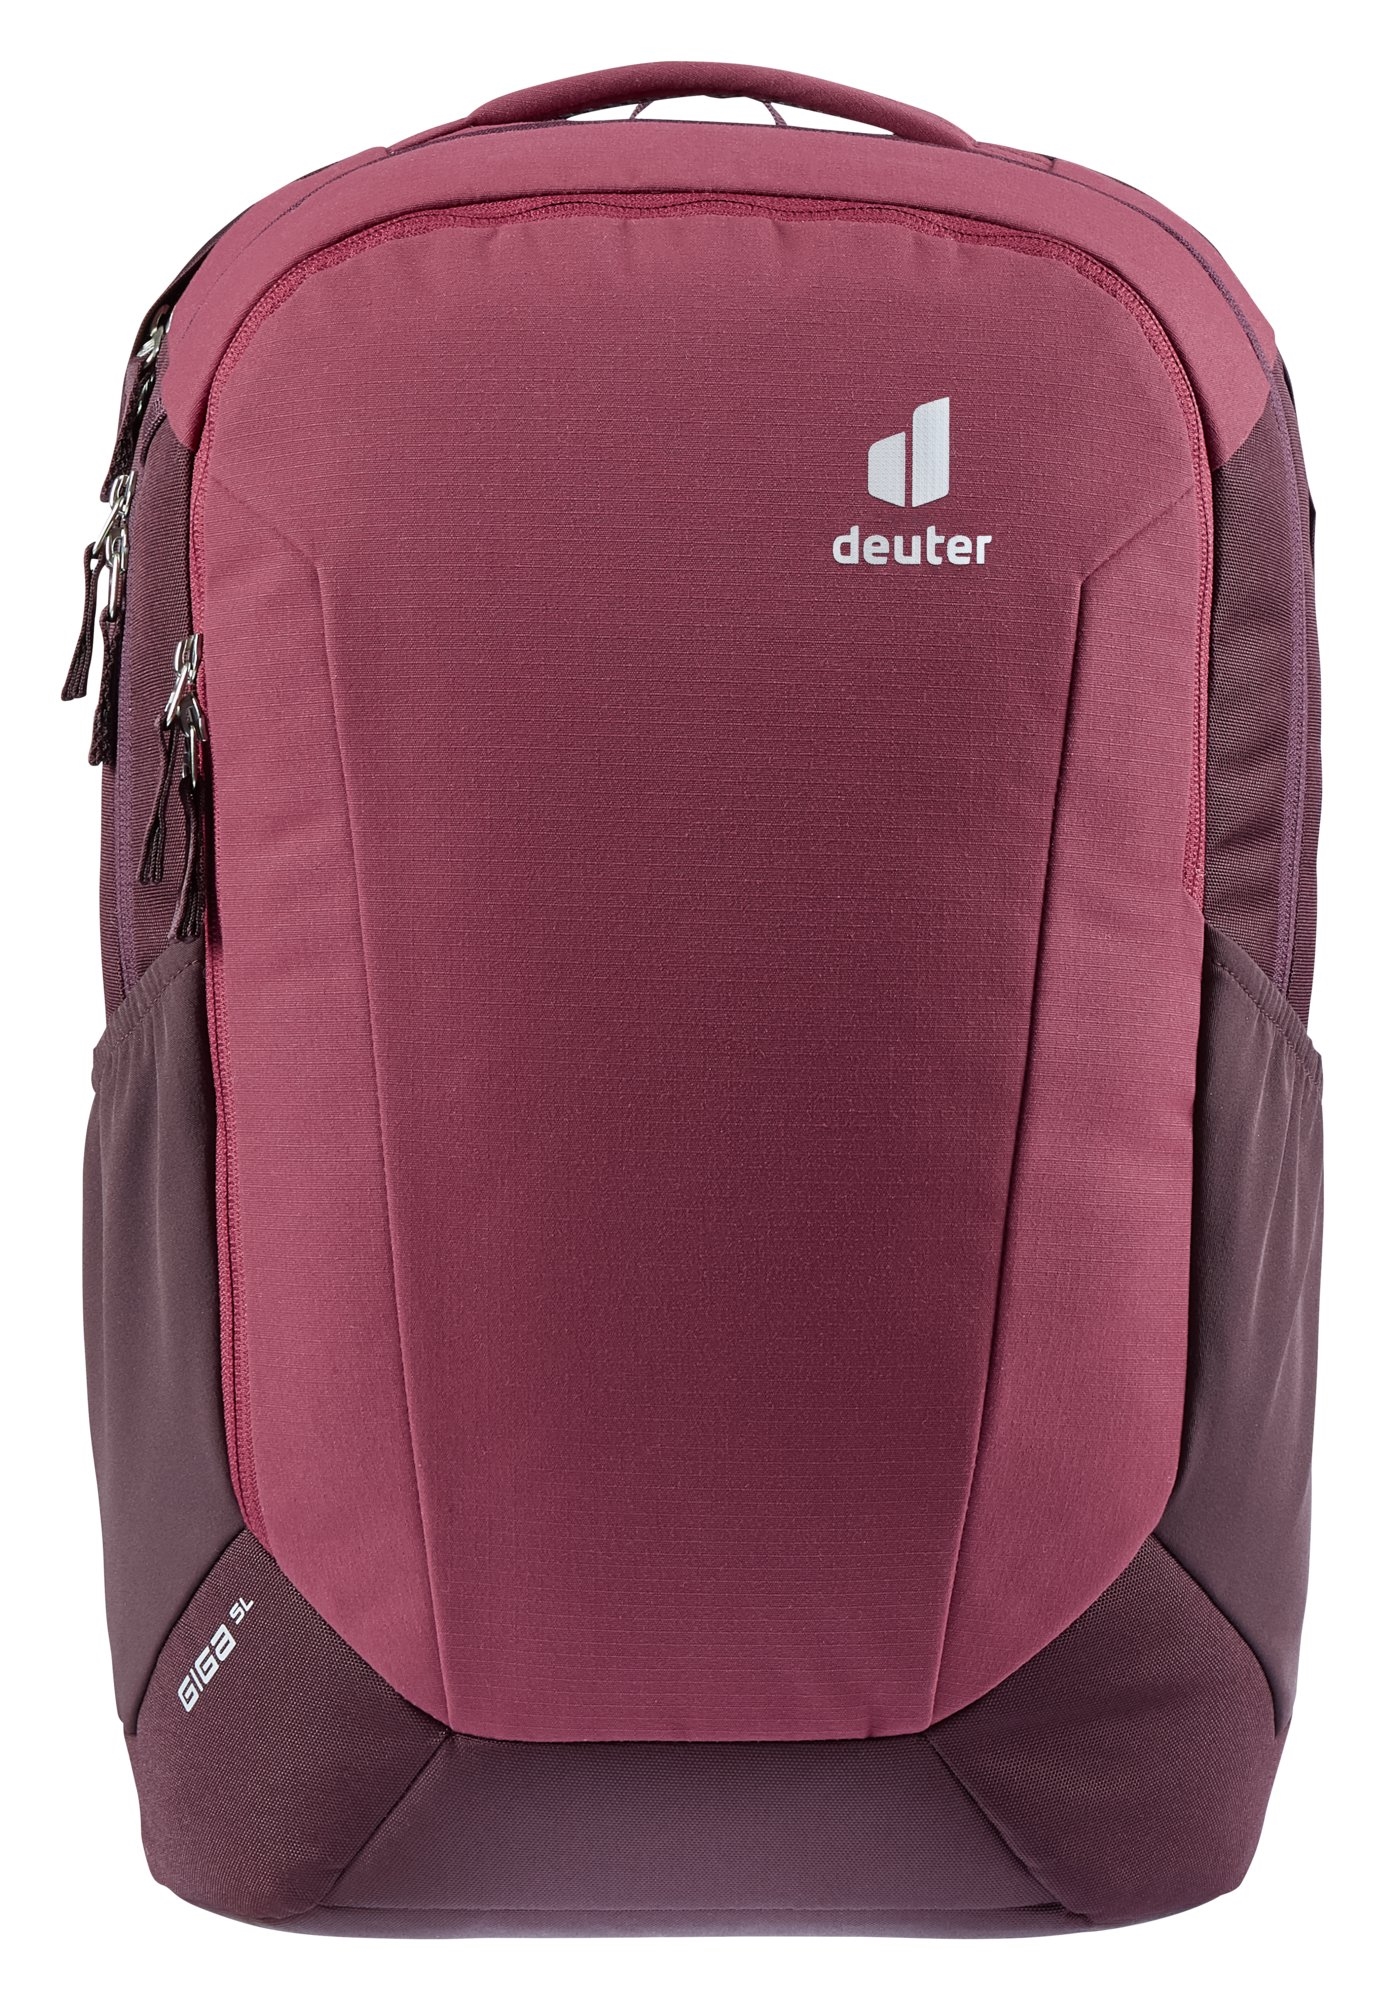 Deuter - Городской рюкзак Giga SL 28